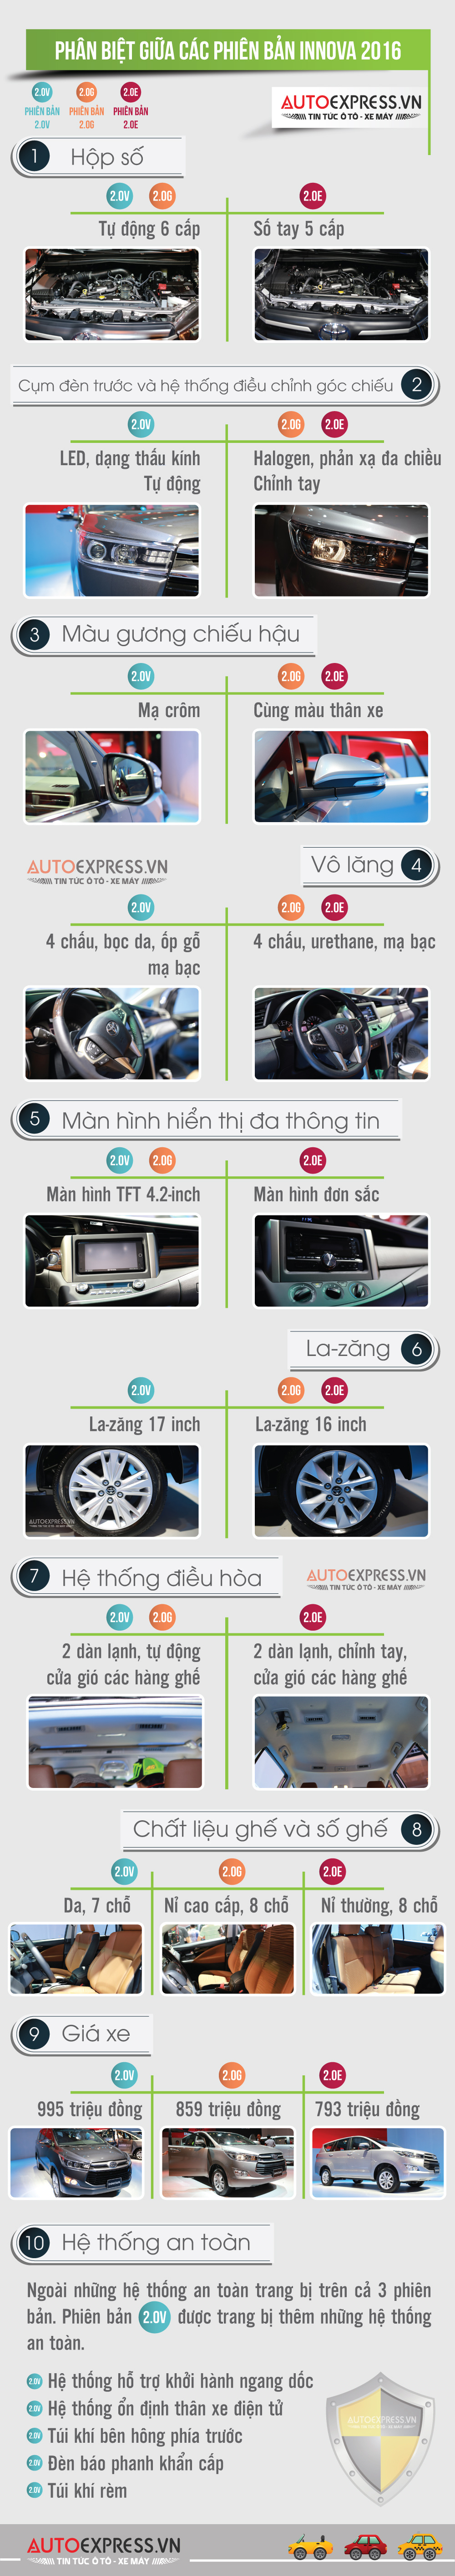 10 điểm khác nhau nổi bật của Toyota Innova 2016 ở 3 phiên bản E, G và V